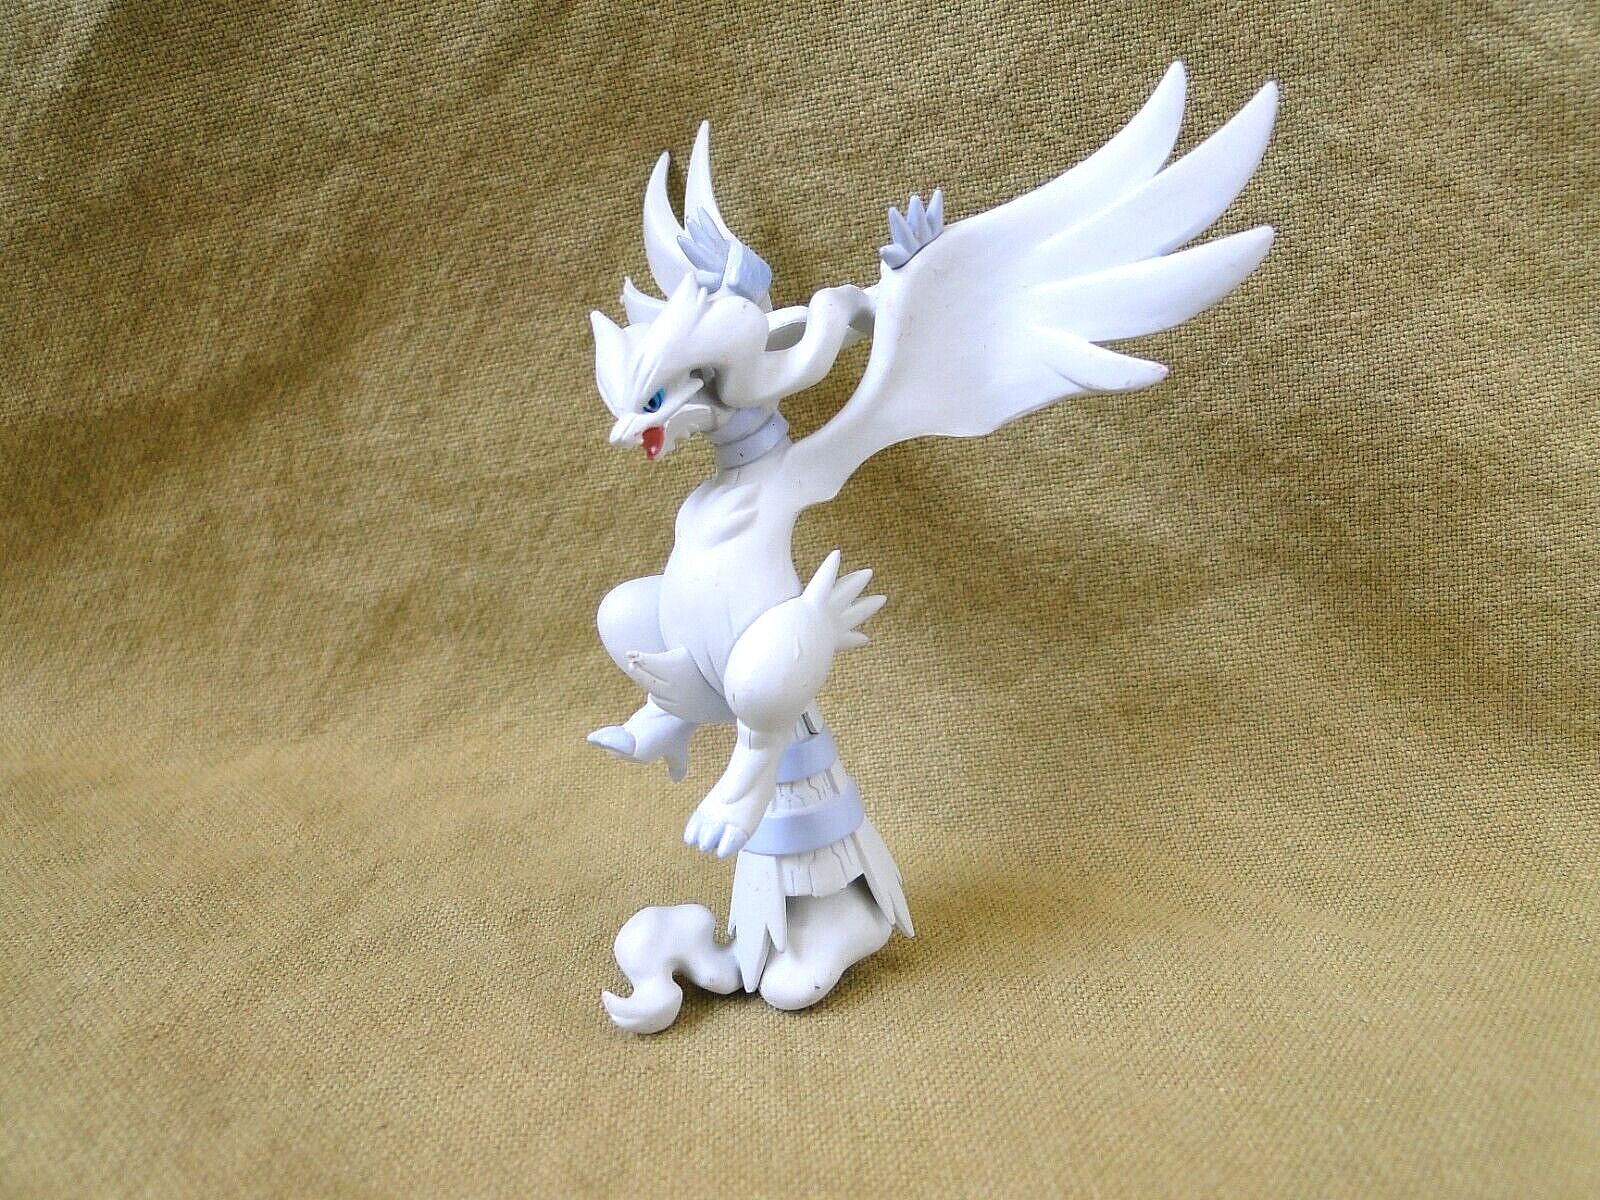 2011 Pokemon Black & White Series: Reshiram PVC Figure